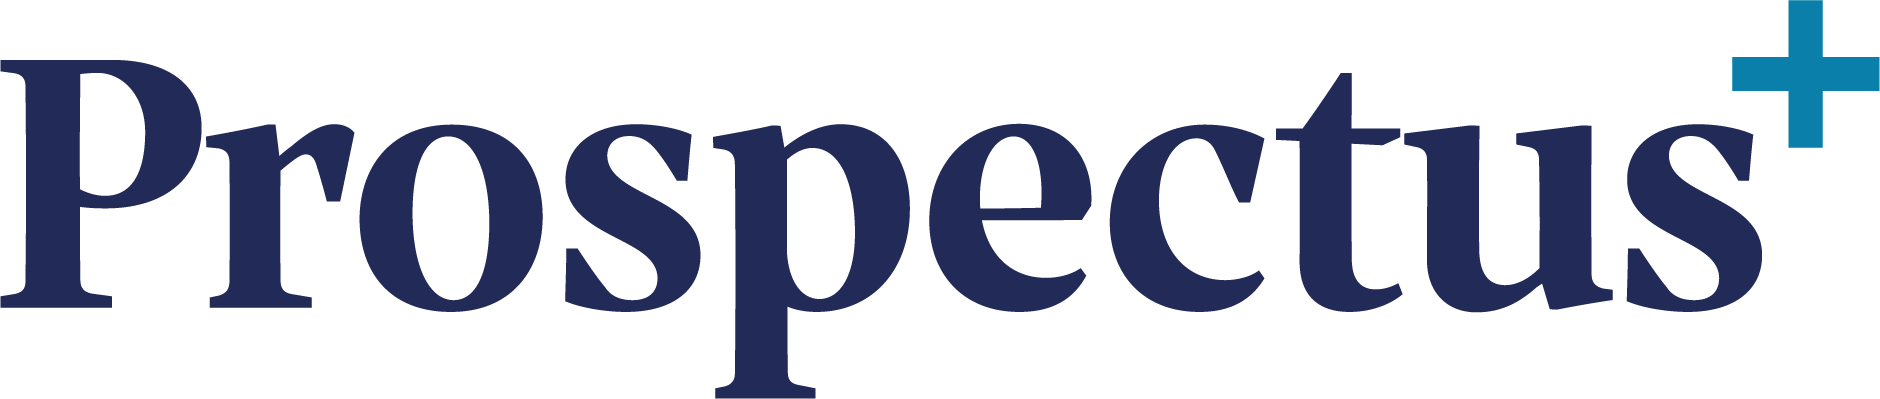 Prospectus Plus blue logo